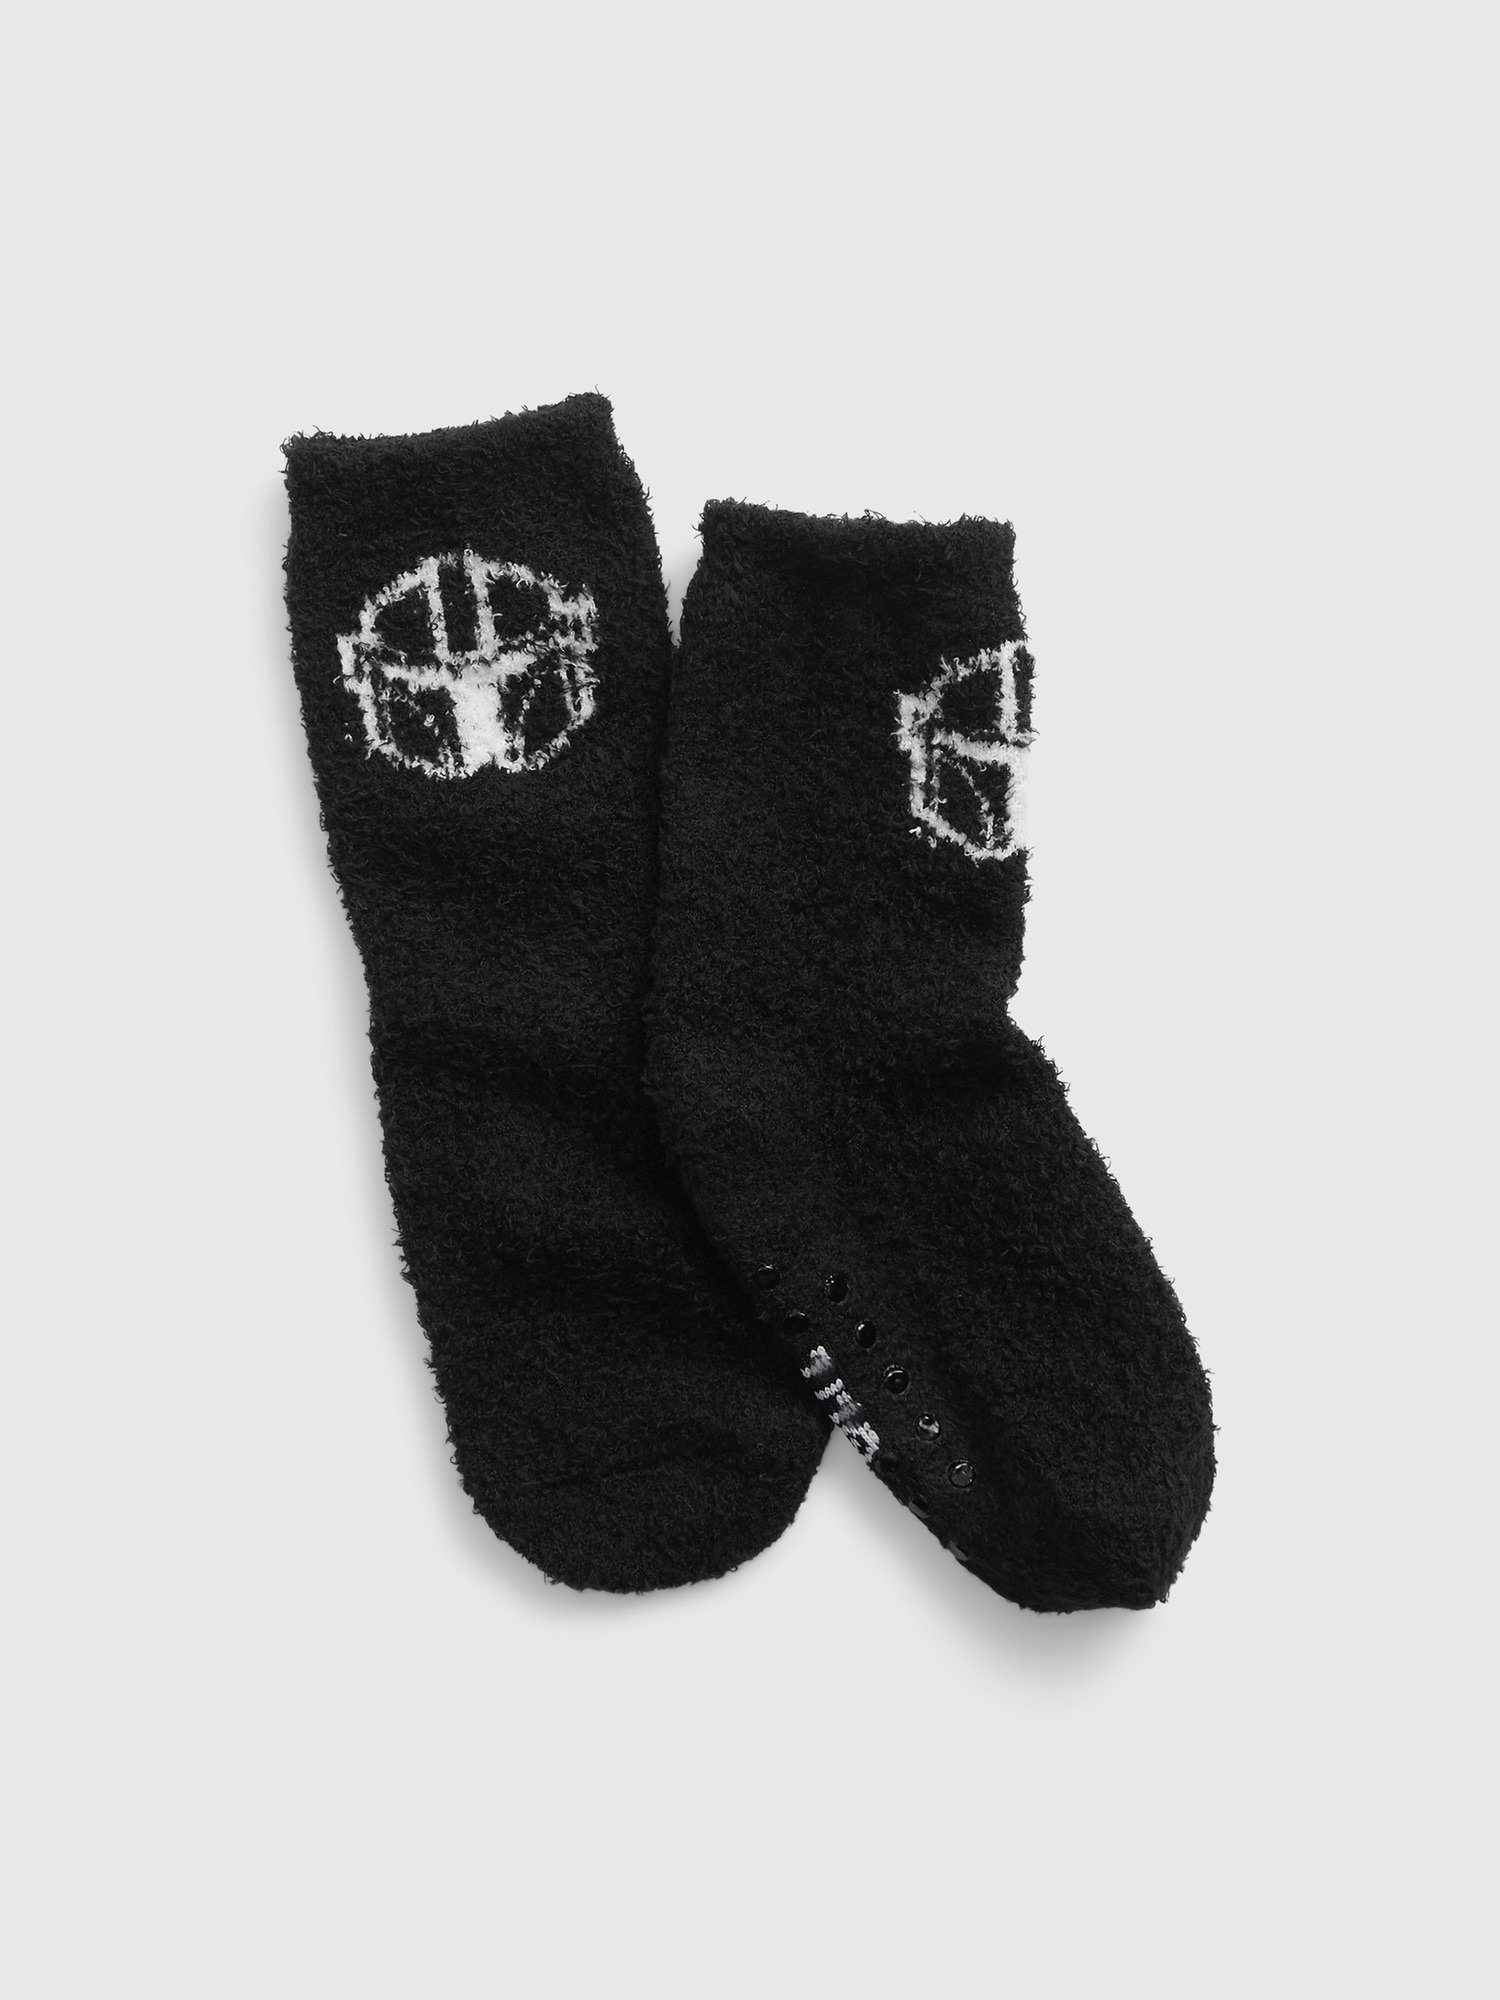 Geri Dönüştürülmüş Star Wars:trade_mark: Cozy Çorap product image